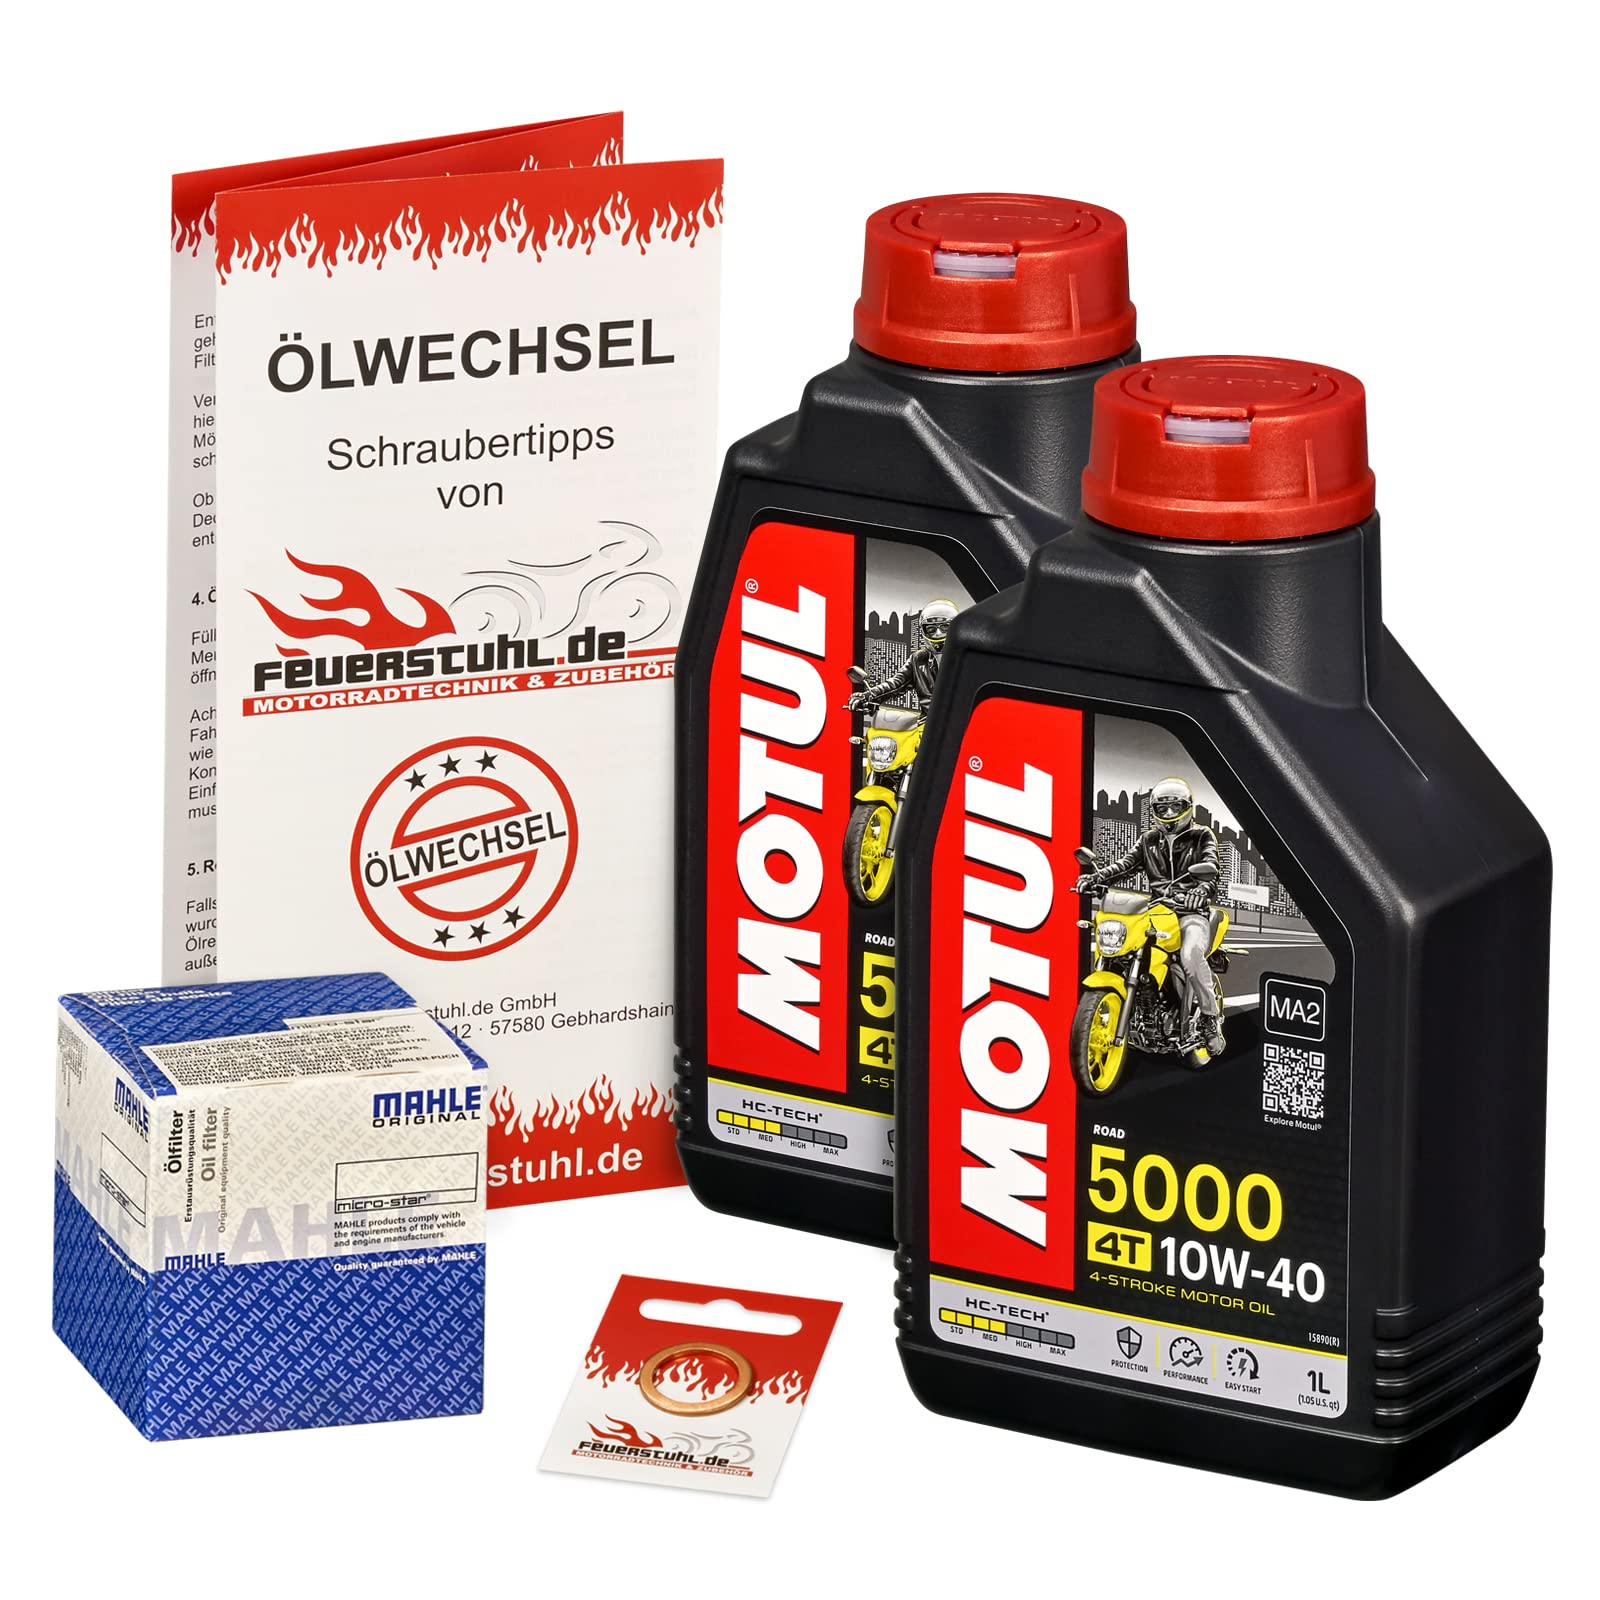 Motul 10W-40 Öl + Mahle Ölfilter für Yamaha Raptor 700 /SE (YFM 700 R), 06-15 - Ölwechselset inkl. Motoröl, Filter, Dichtring von Feuerstuhl.de GmbH